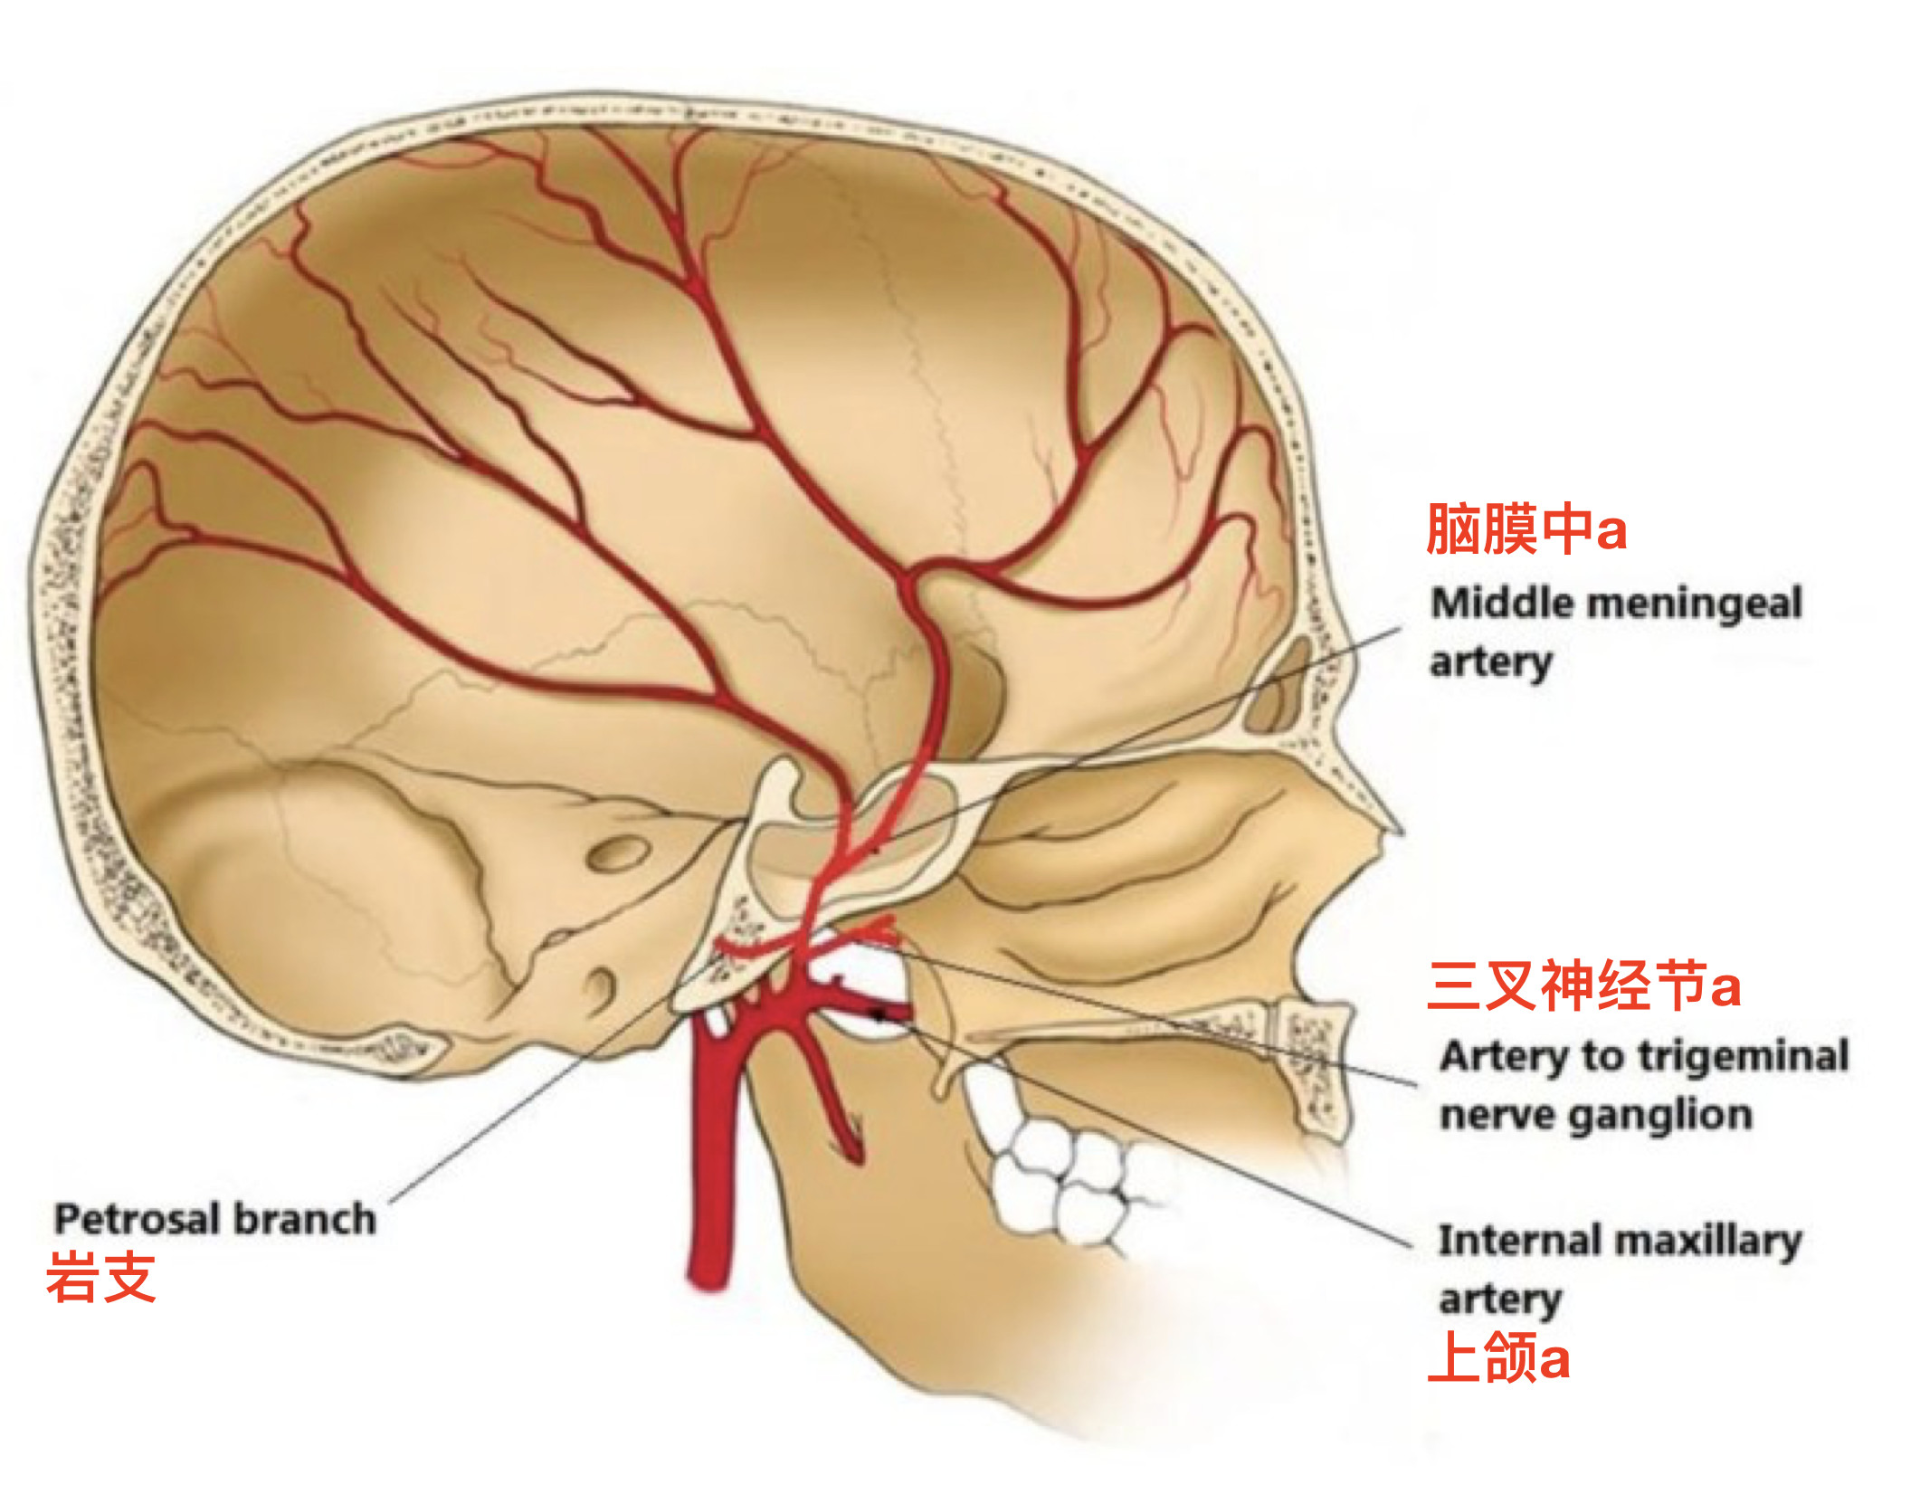 脑血管解剖学习笔记第1期:脑膜中动脉大体解剖